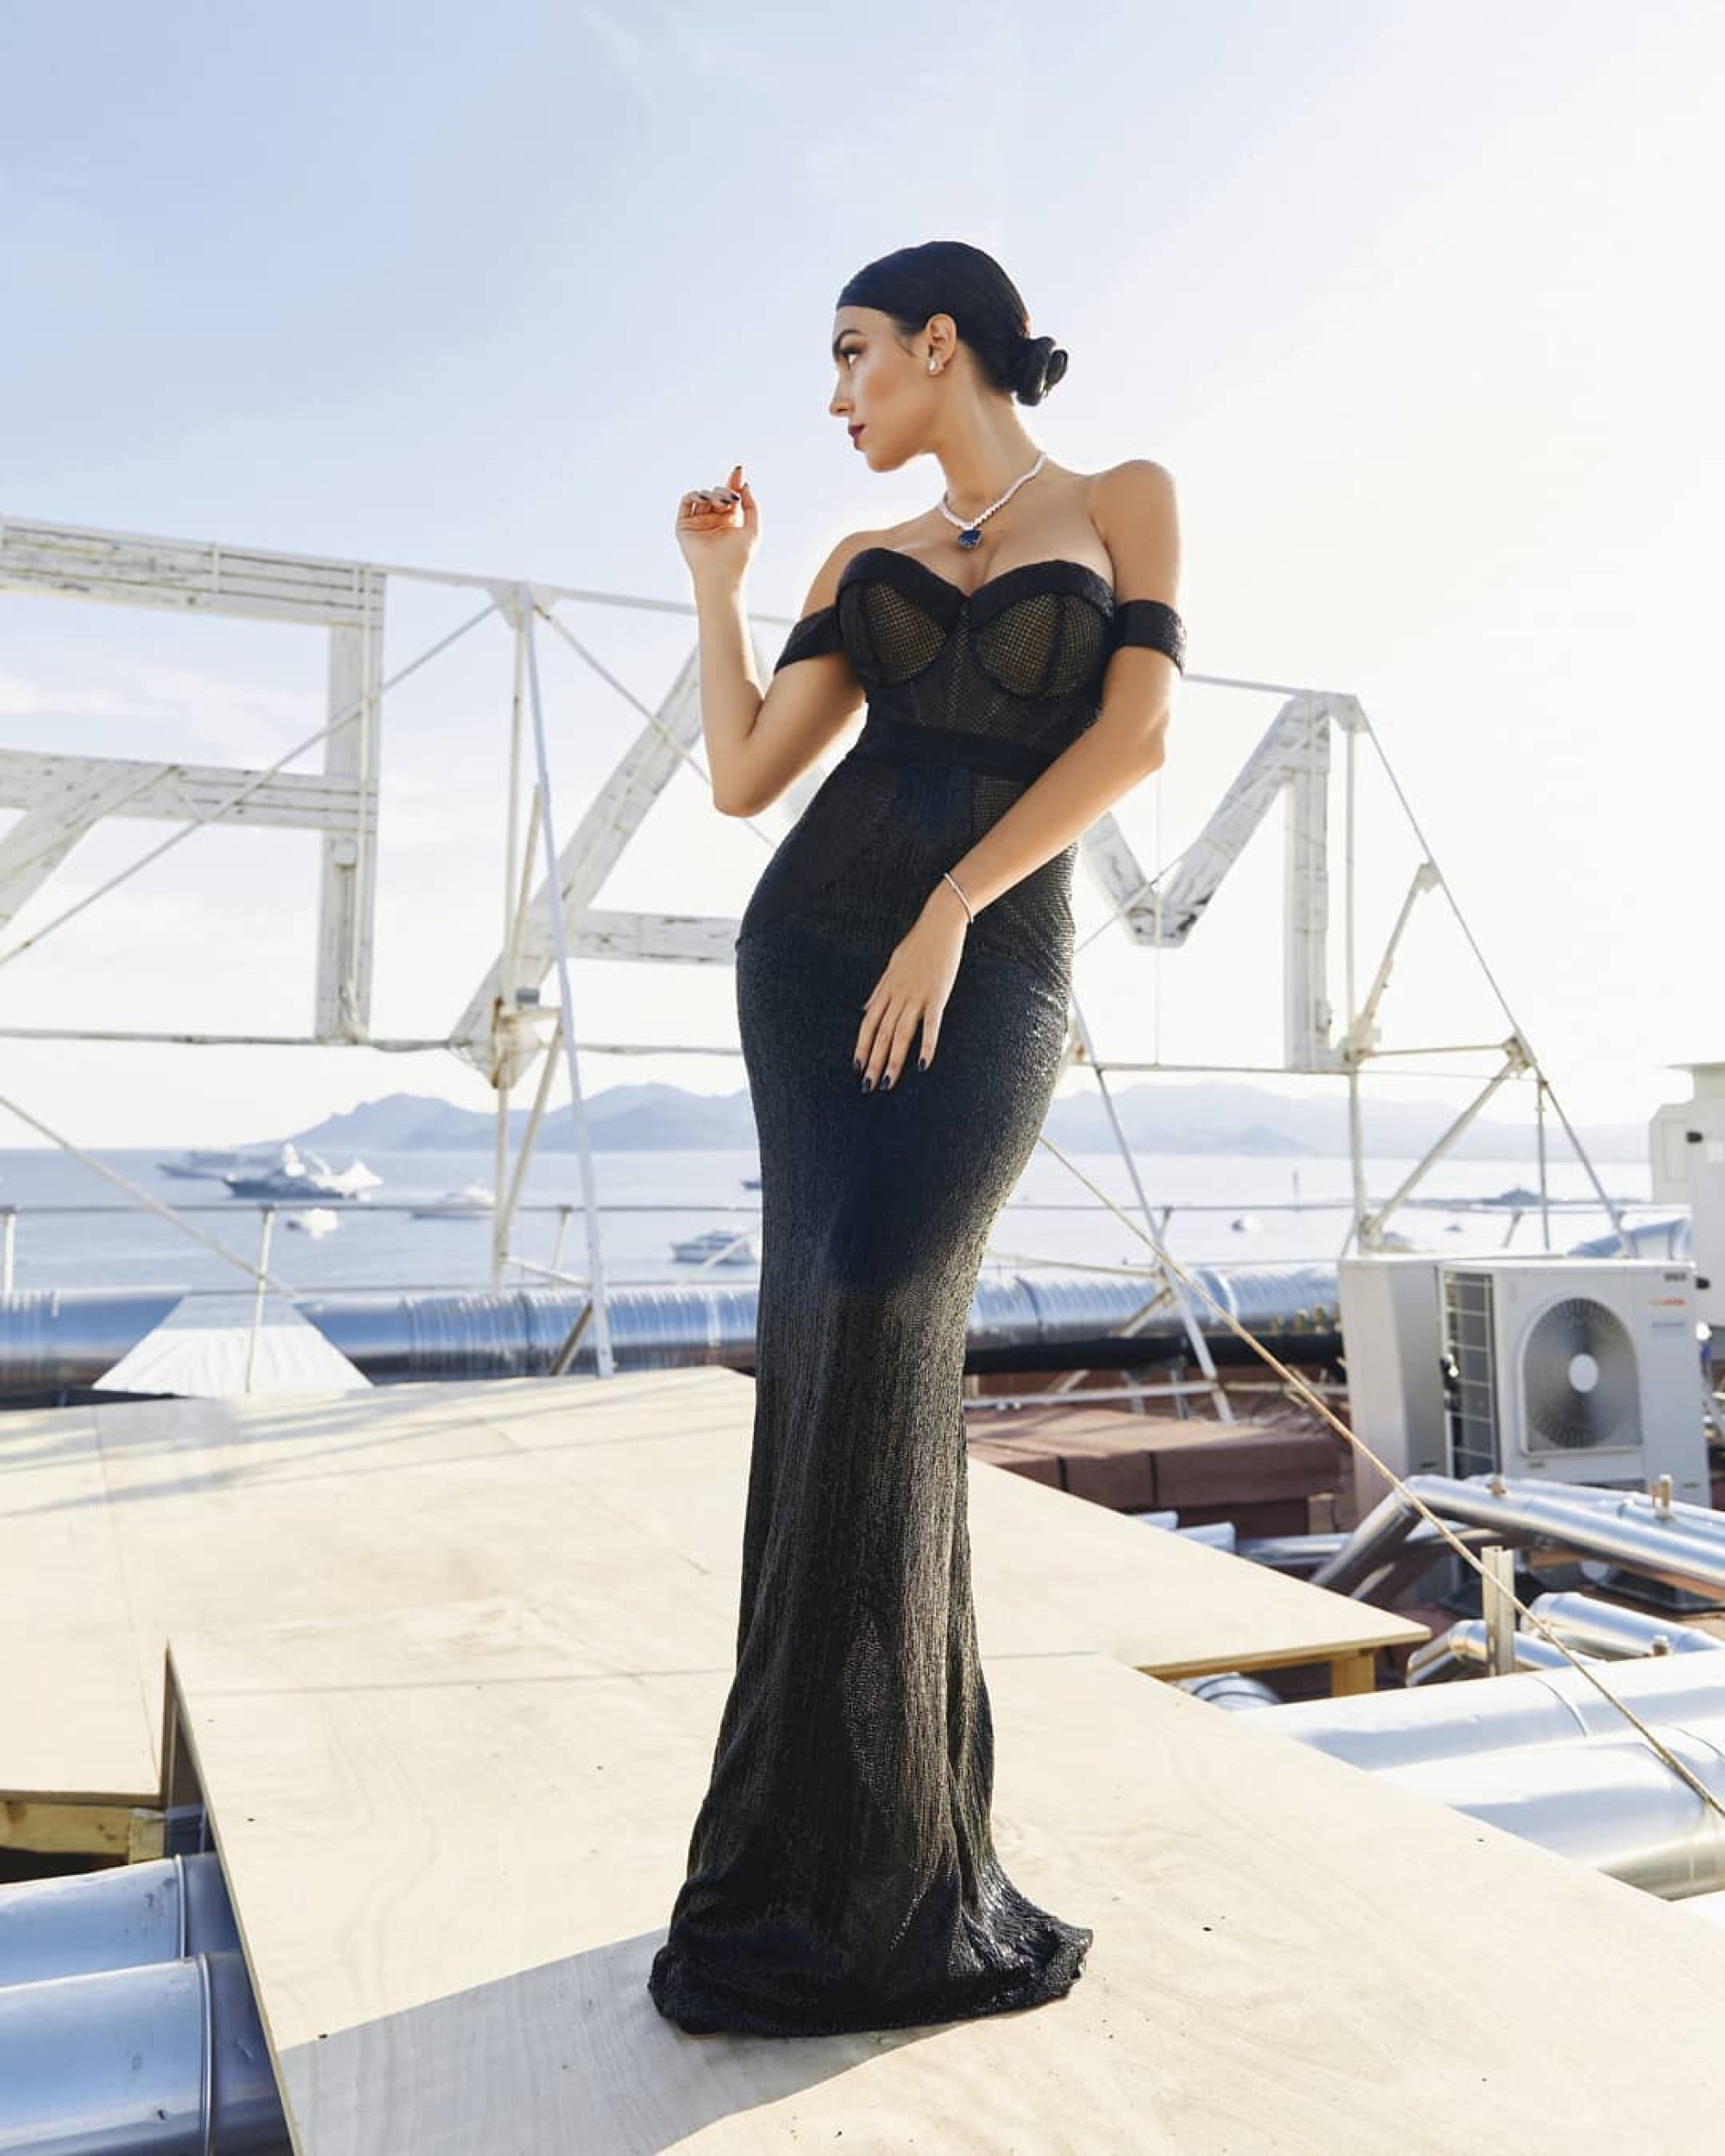 Georgina Rodriguez at the 2019 Cannes Film Festival. Photo: @georginagio/Instagram